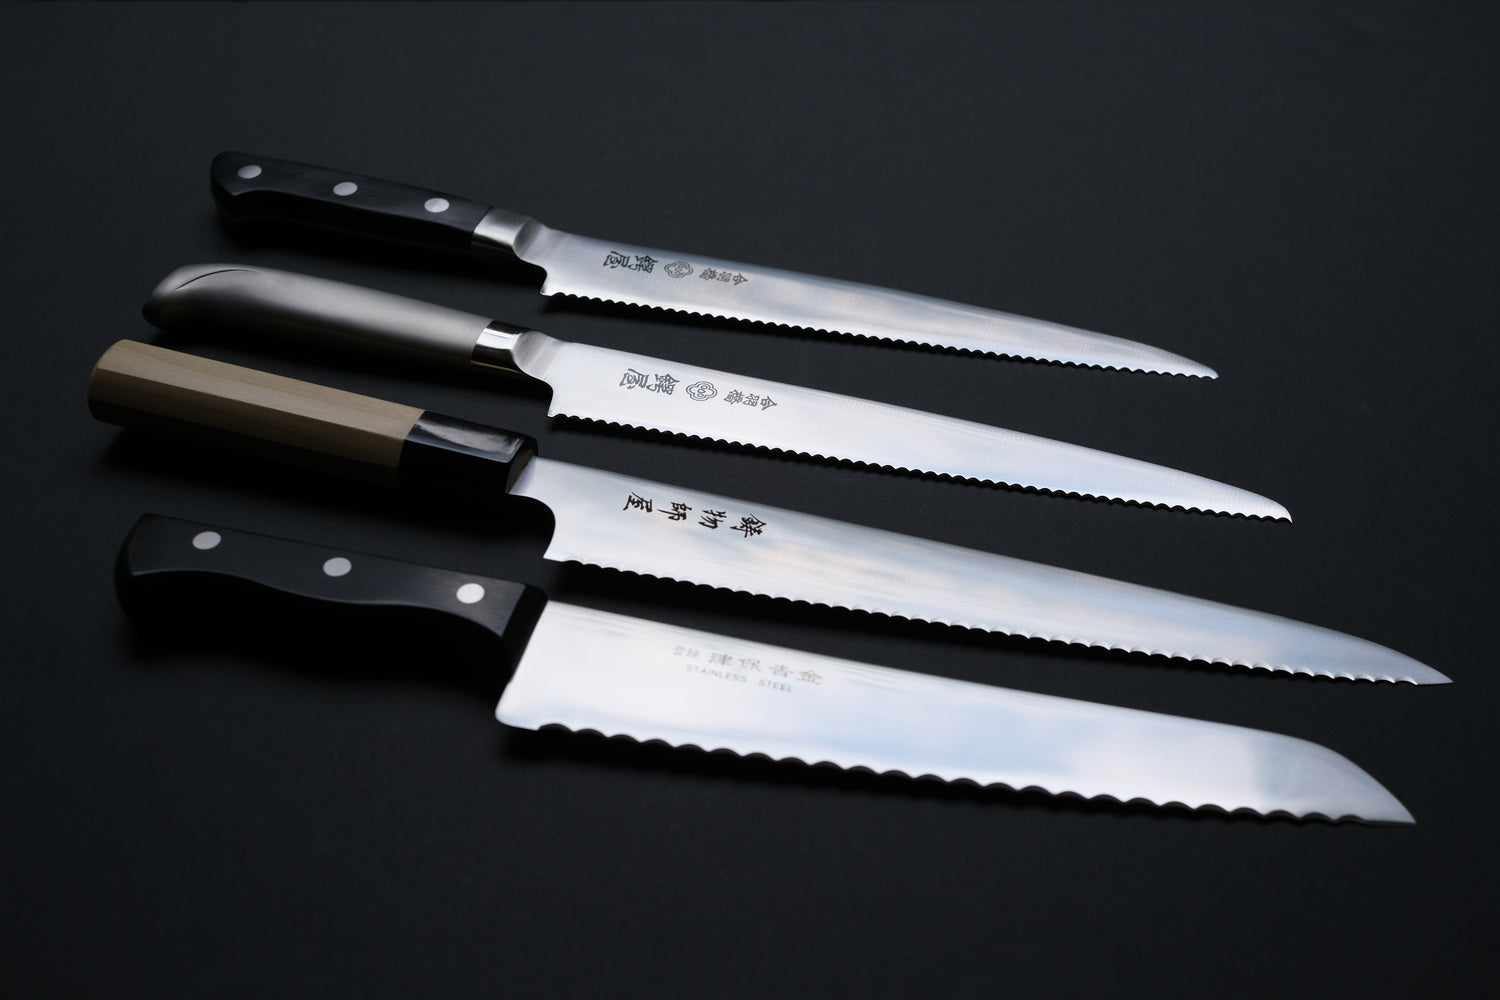 Breadknives